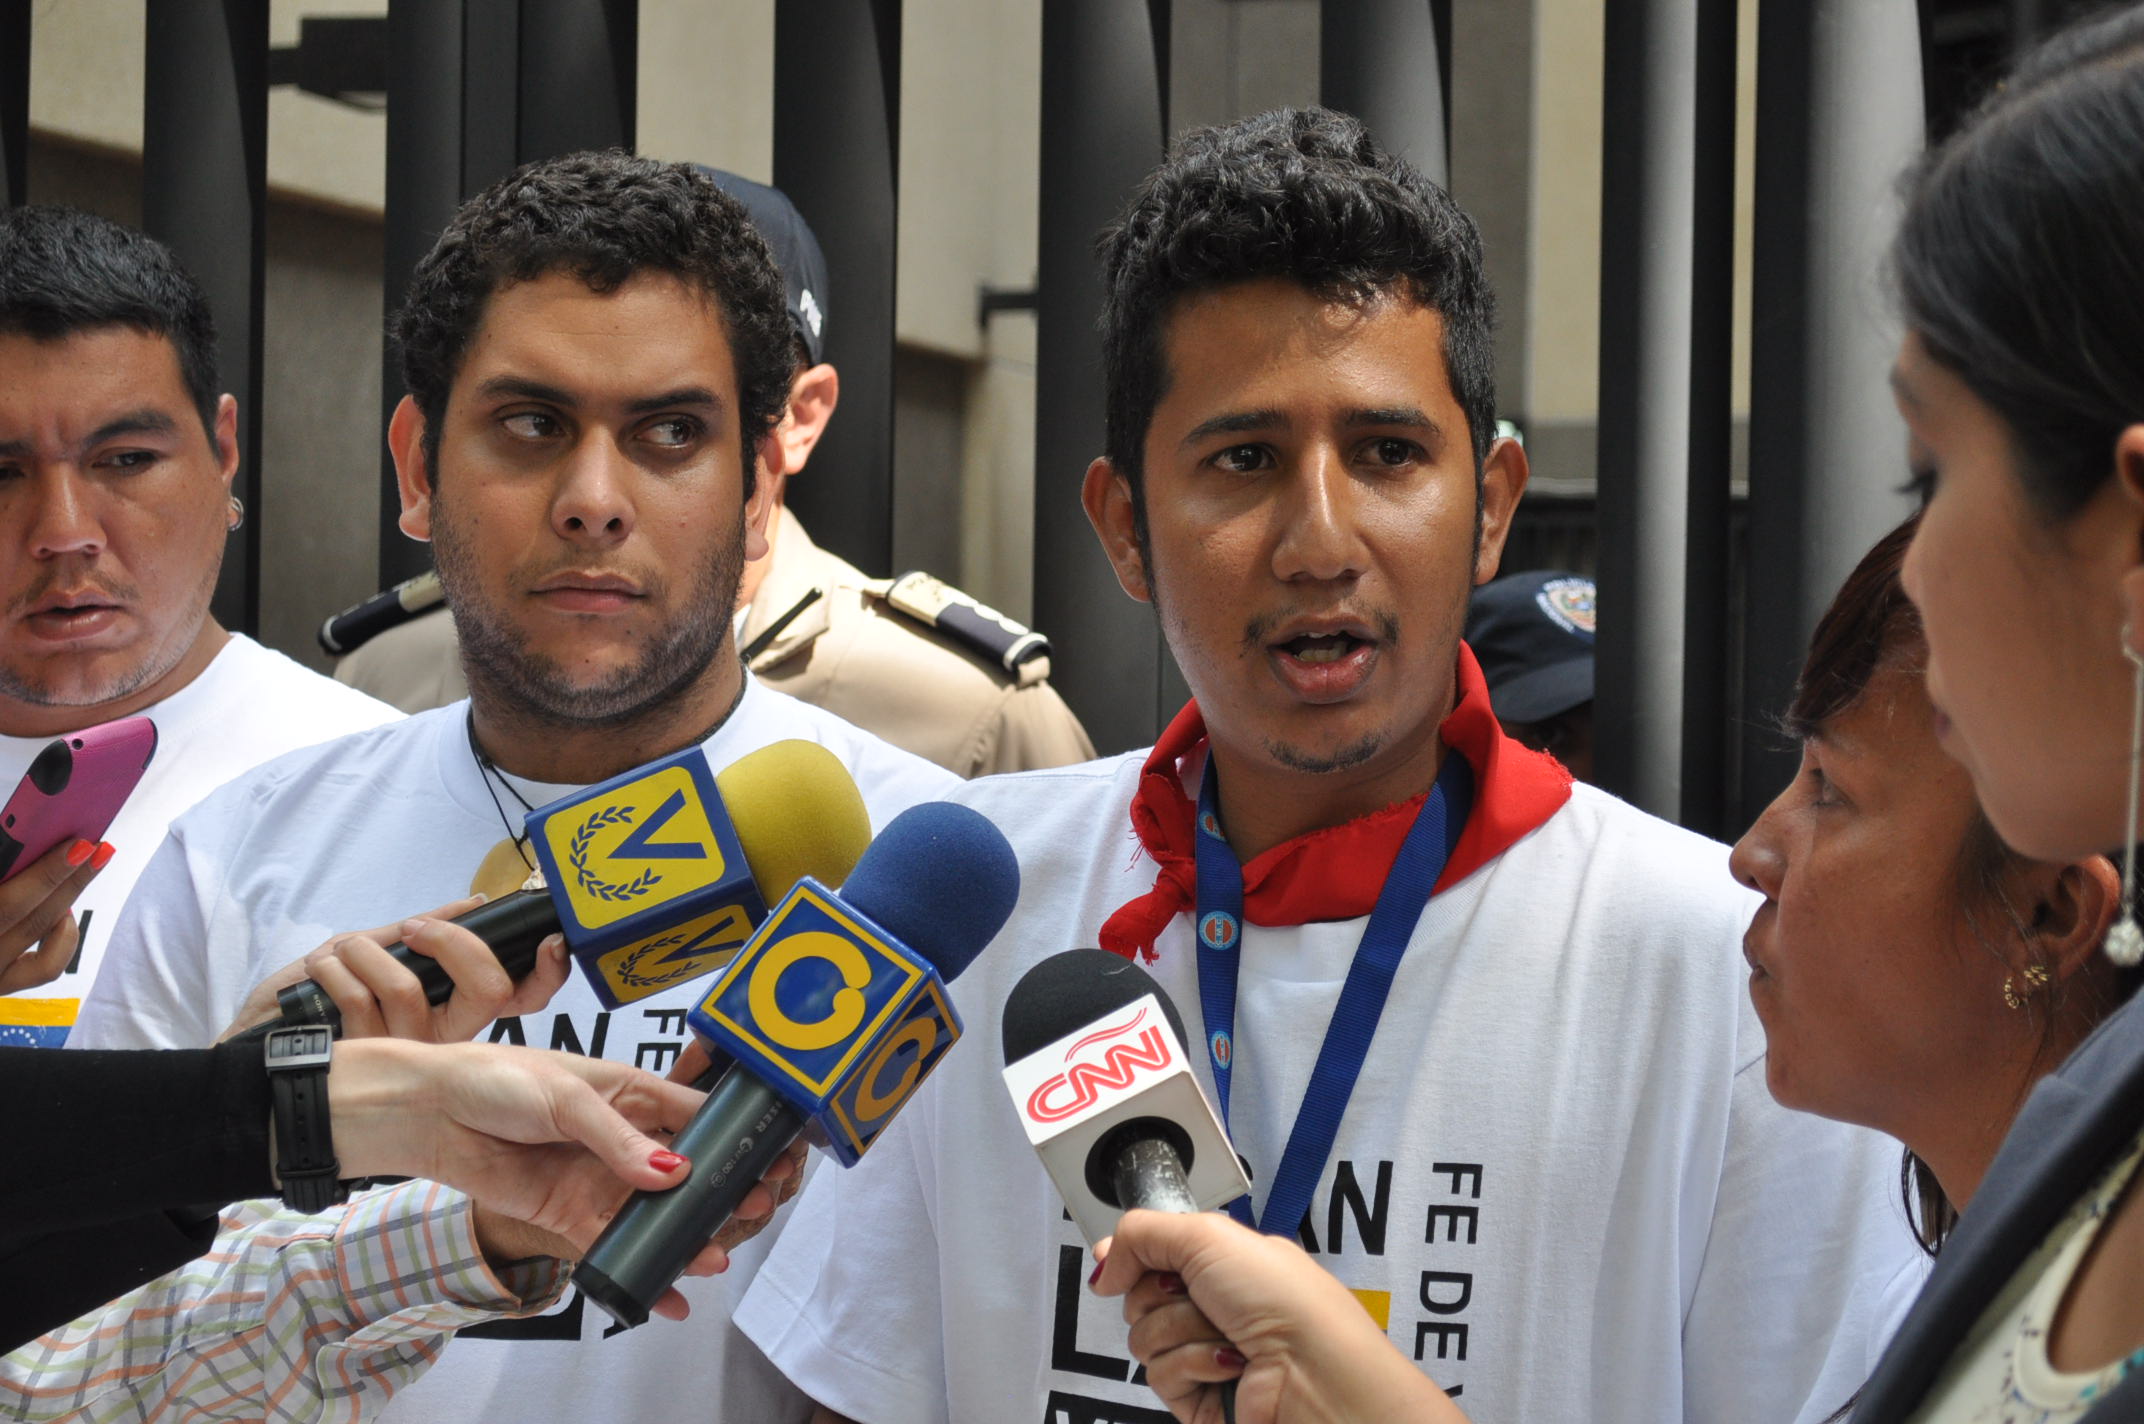 Estudiantes se mantienen encadenados frente a la OEA (FOTOS)